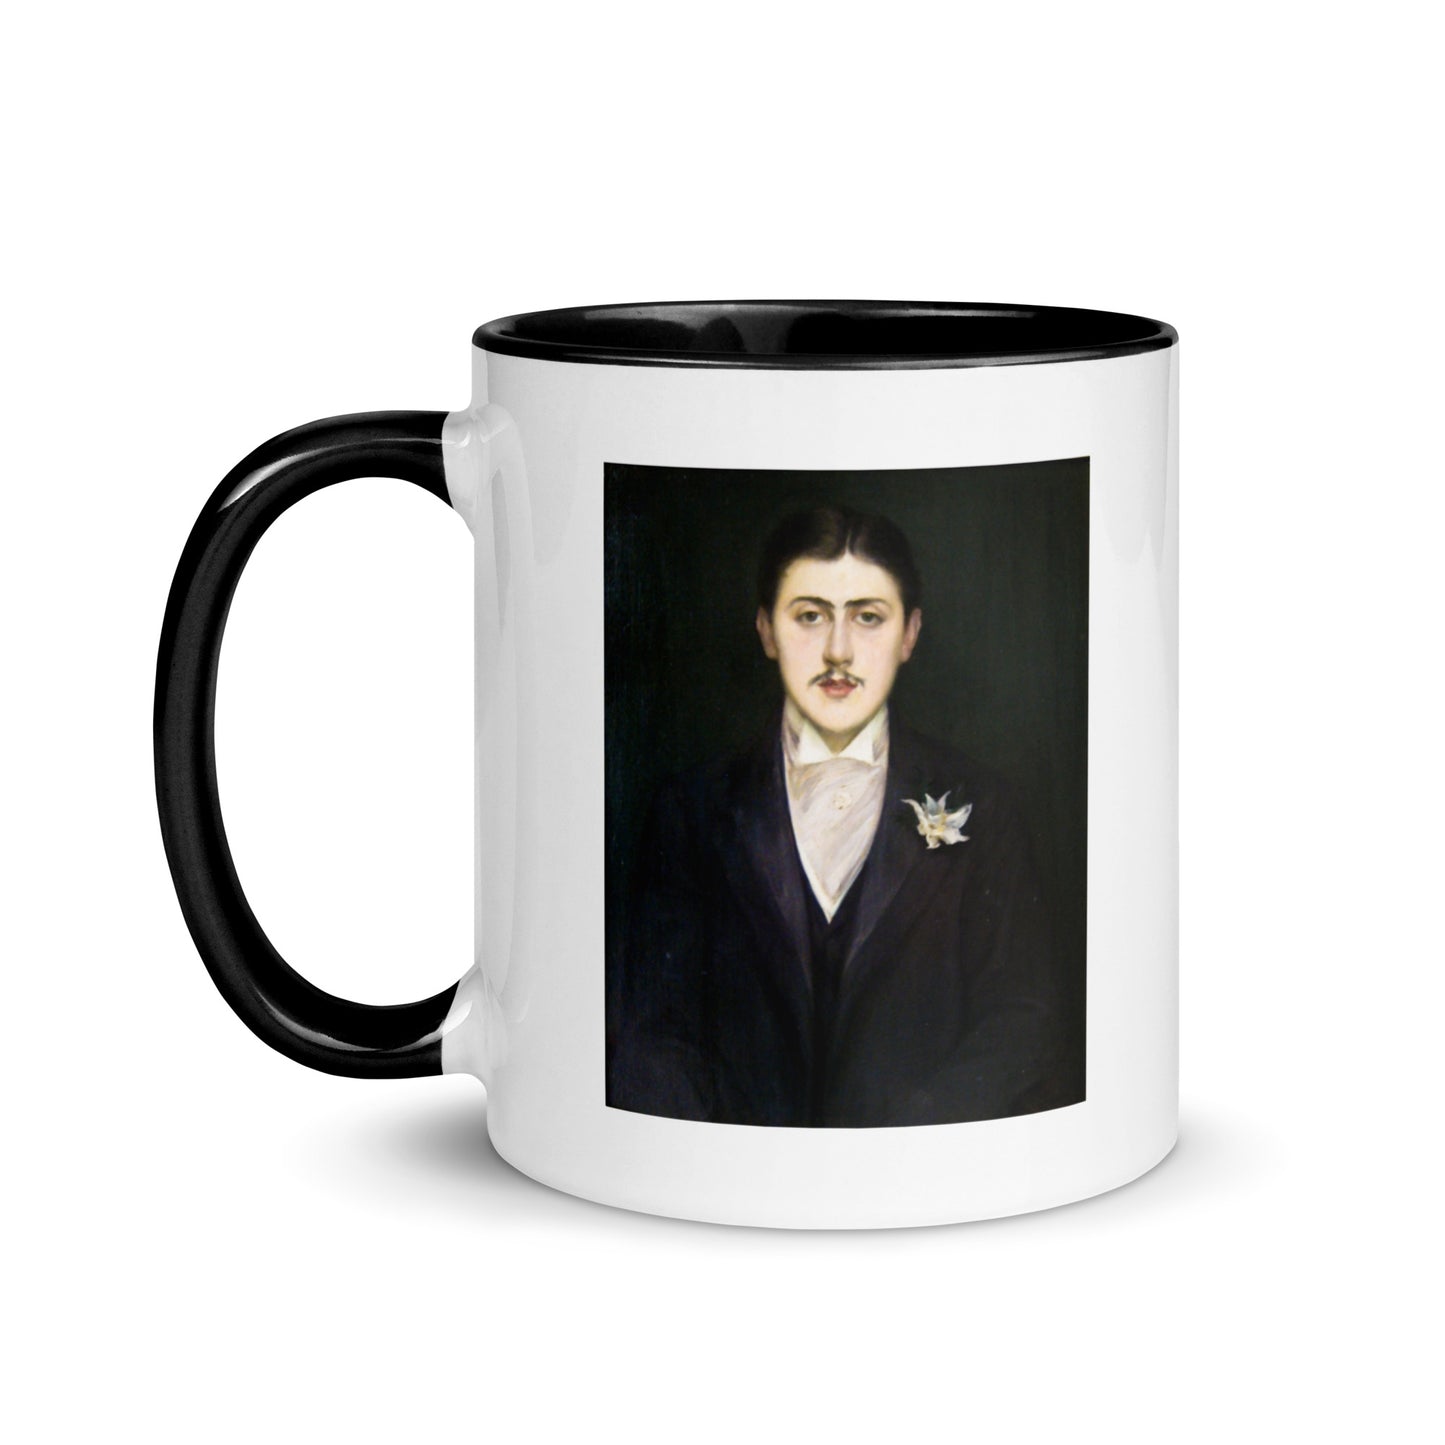 Marcel Proust mug with color inside